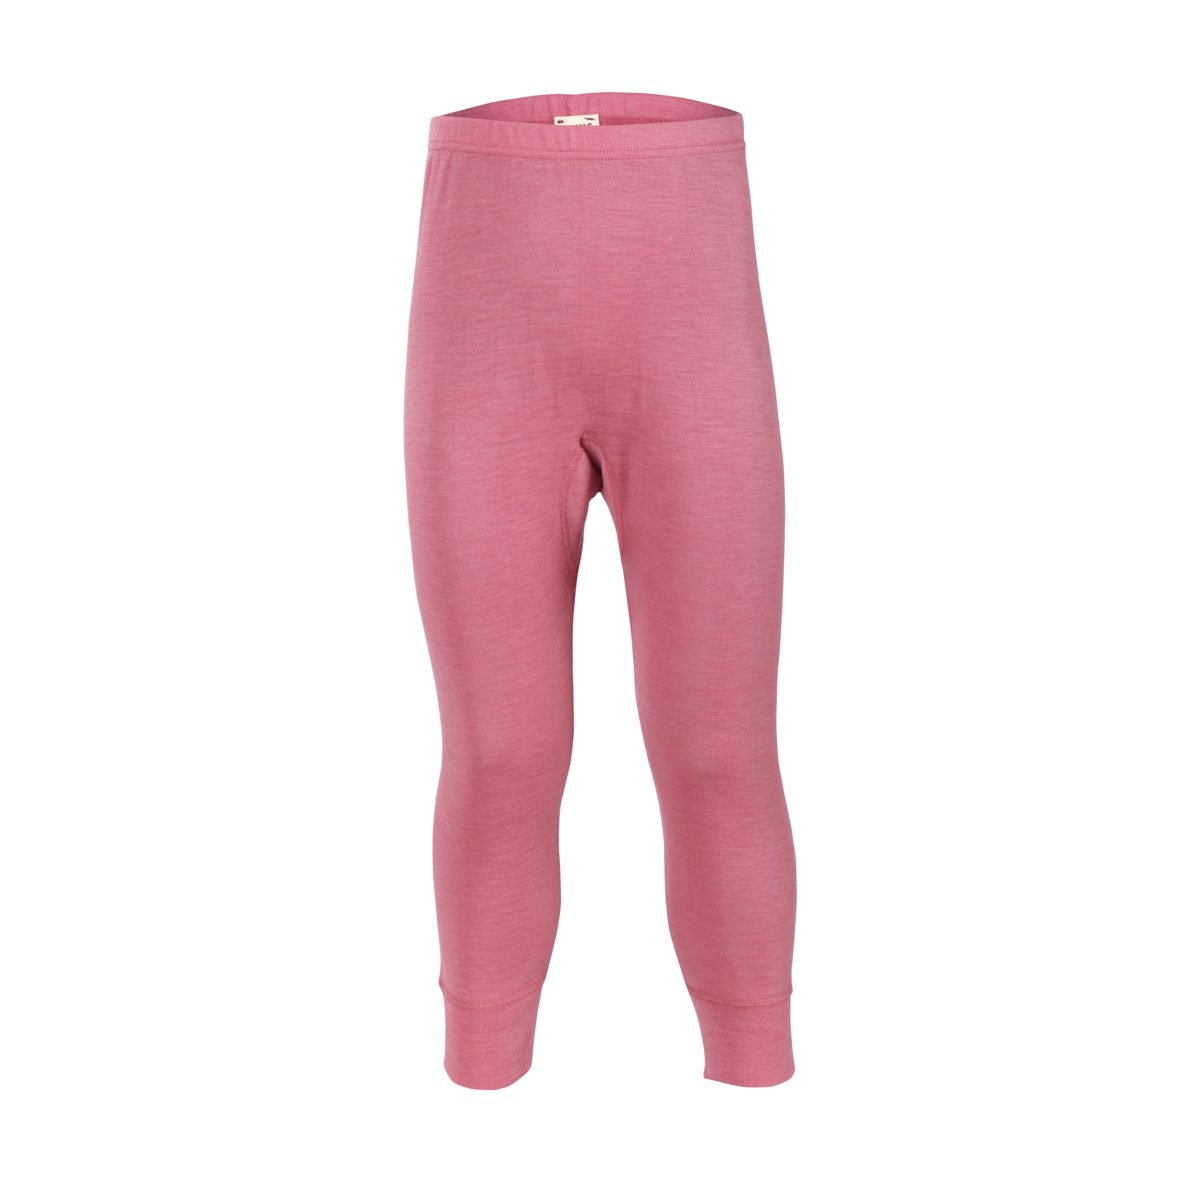 LIVING CRAFTS Lange Unterhose Pink temperatur- feuchtigkeits-ausgleichend und Atmungsaktiv, Light